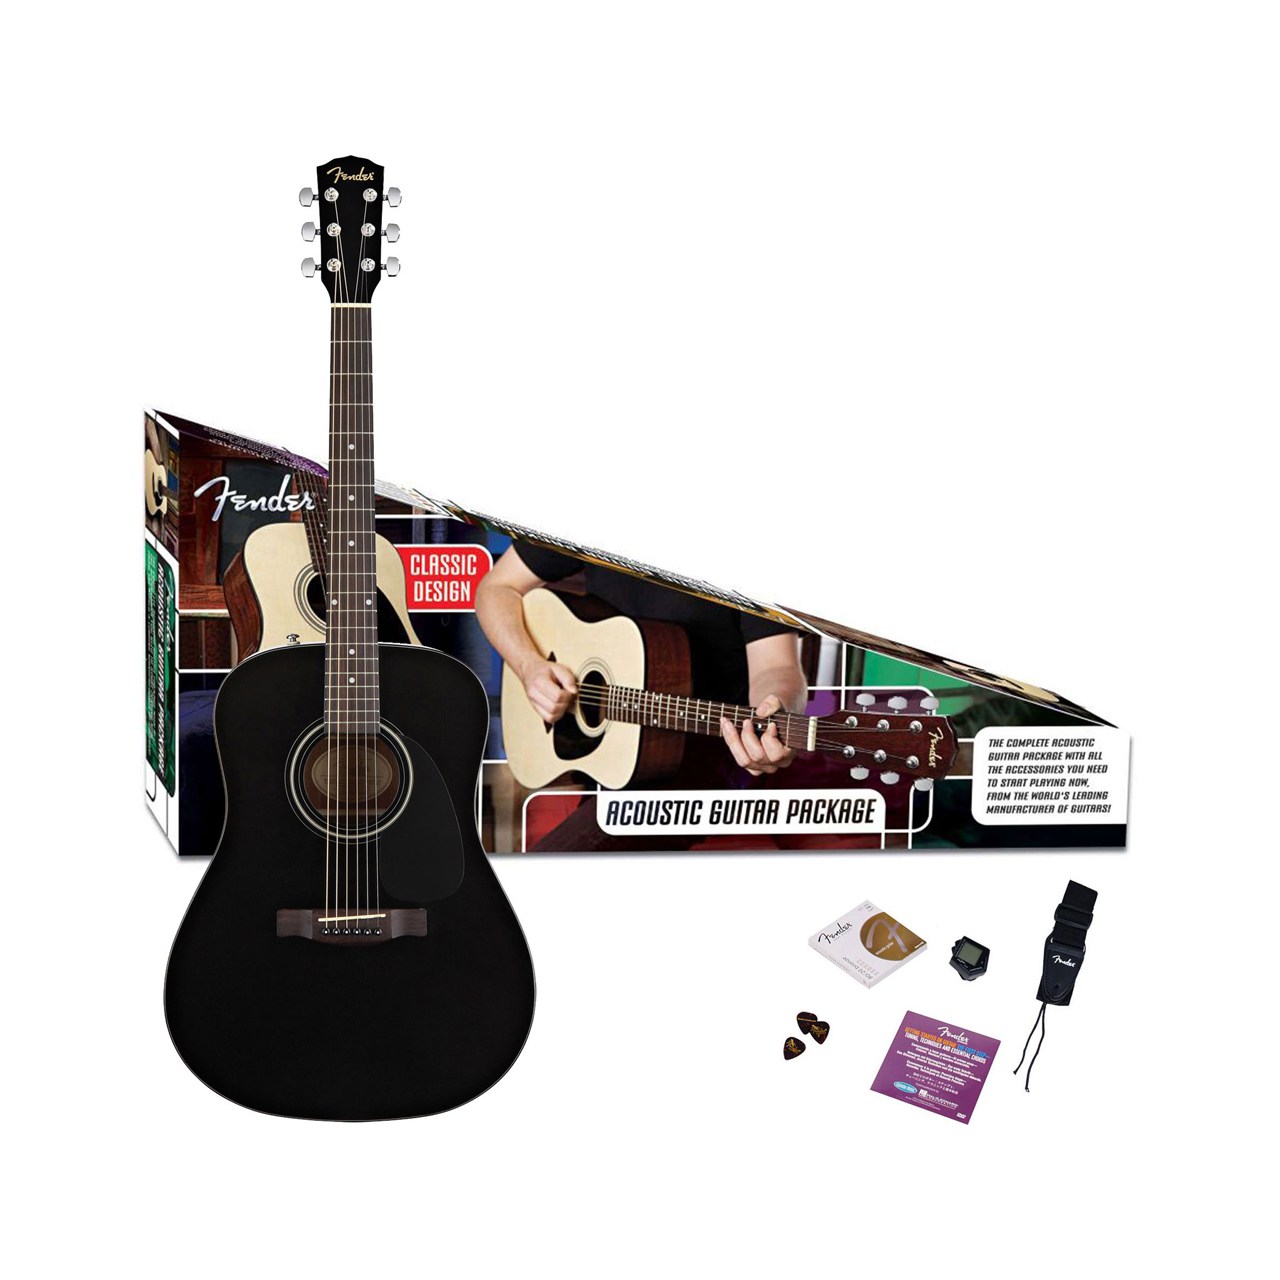 گیتار آکوستیک فندر مدل CD-60 Pack Black DS v2